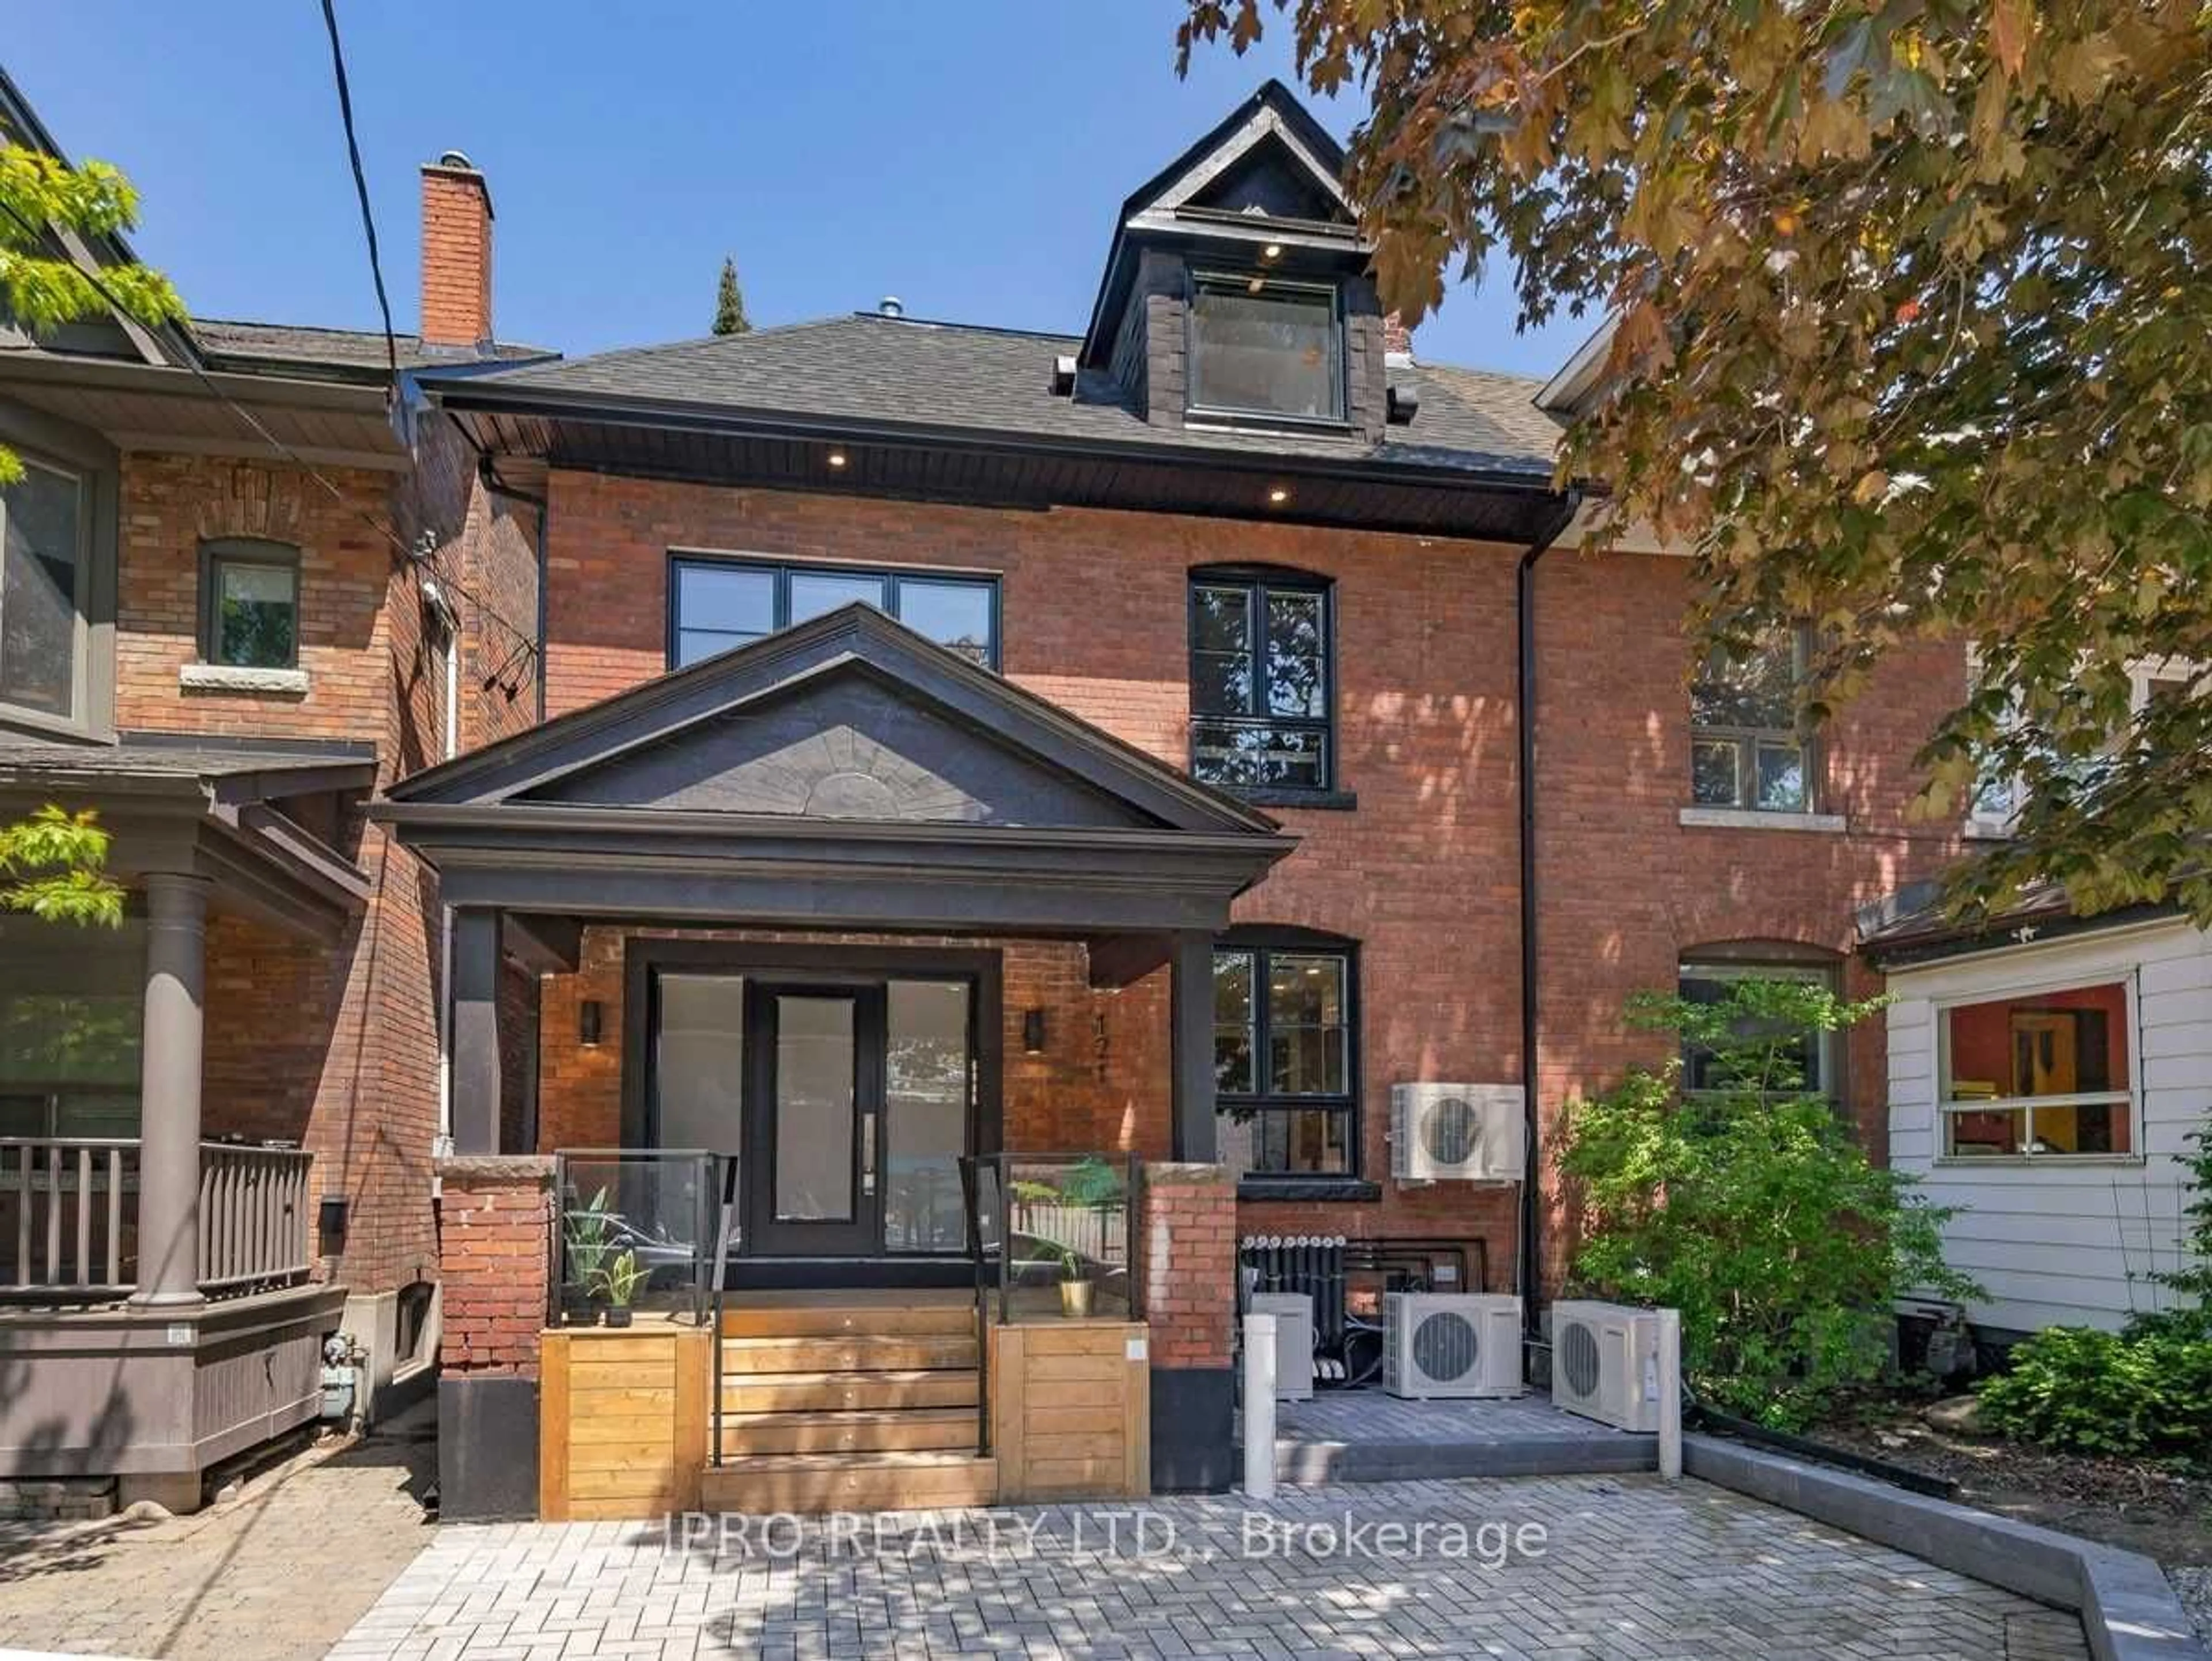 Home with brick exterior material for 121 Sorauren Ave, Toronto Ontario M6R 2E3